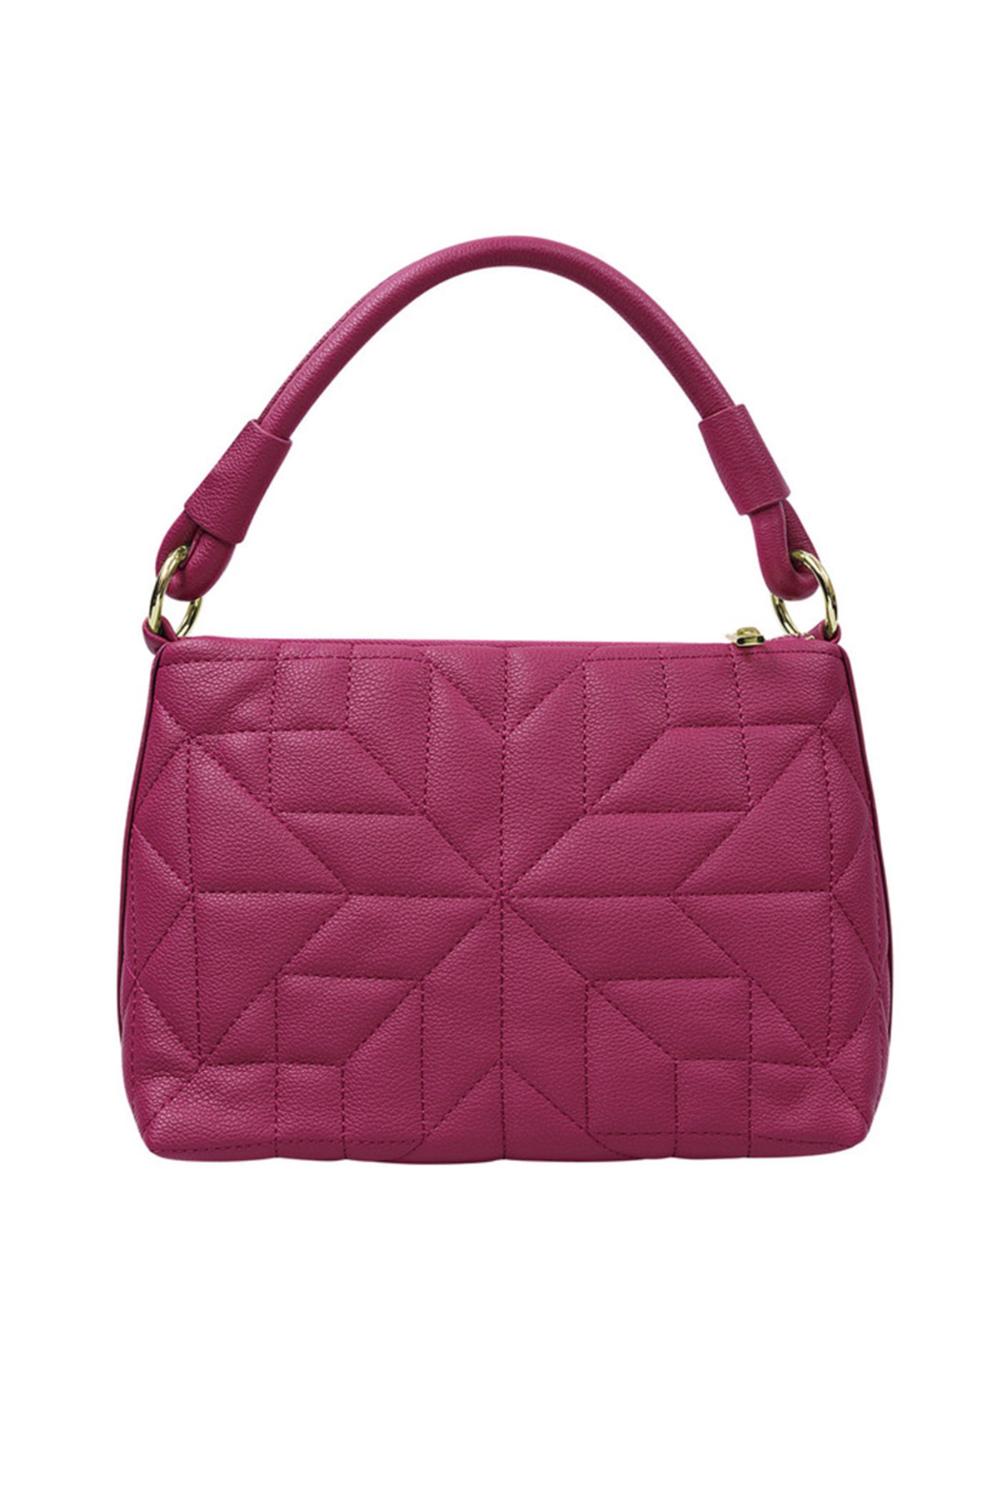 Stitched handbag dark pink